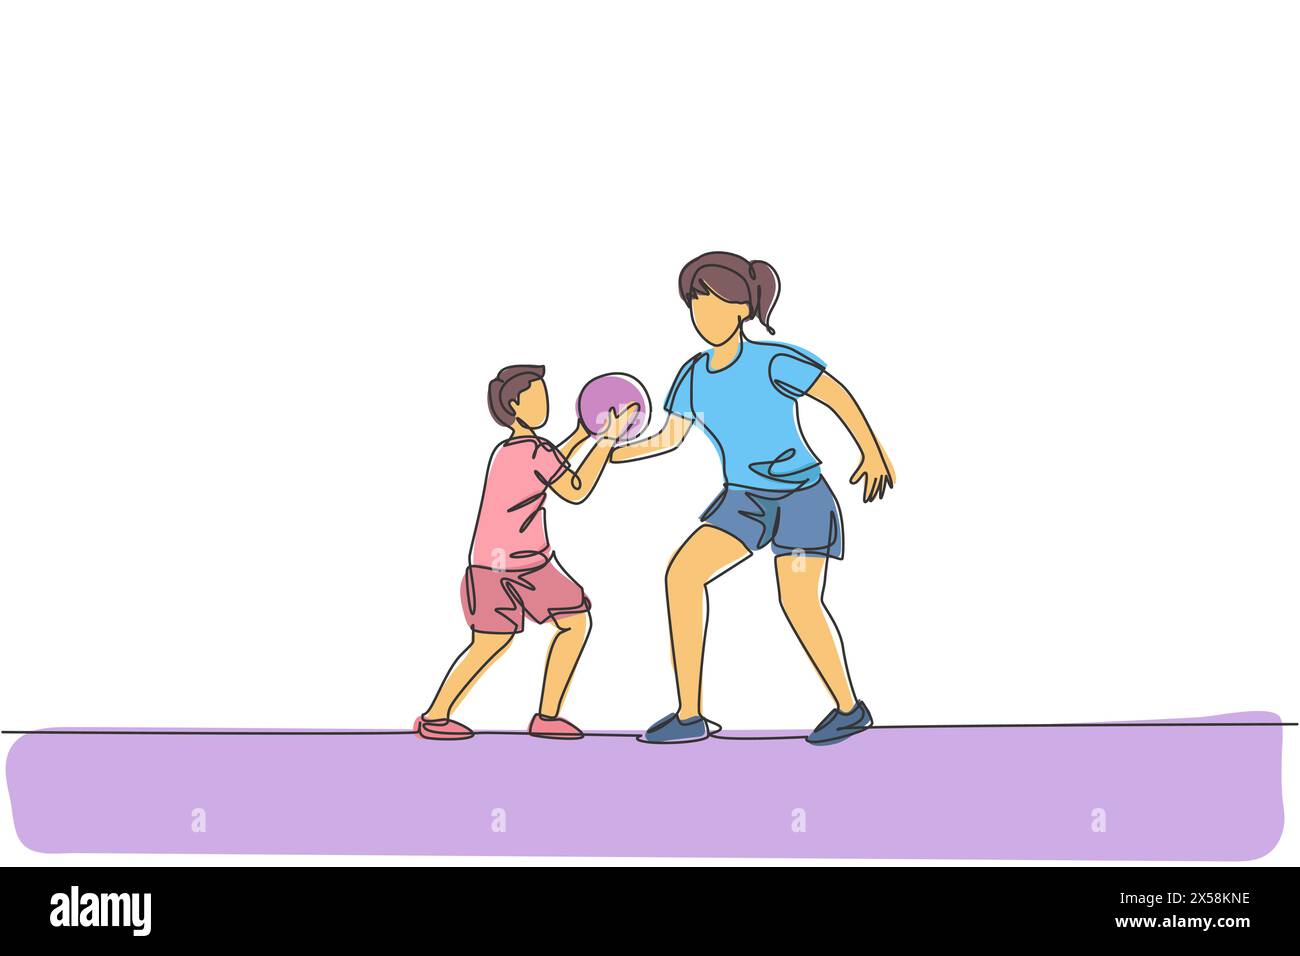 Un unico disegno continuo di una giovane mamma che gioca a basket con suo figlio in campo casalingo. Concetto di famiglia felice. Design alla moda a una linea Illustrazione Vettoriale